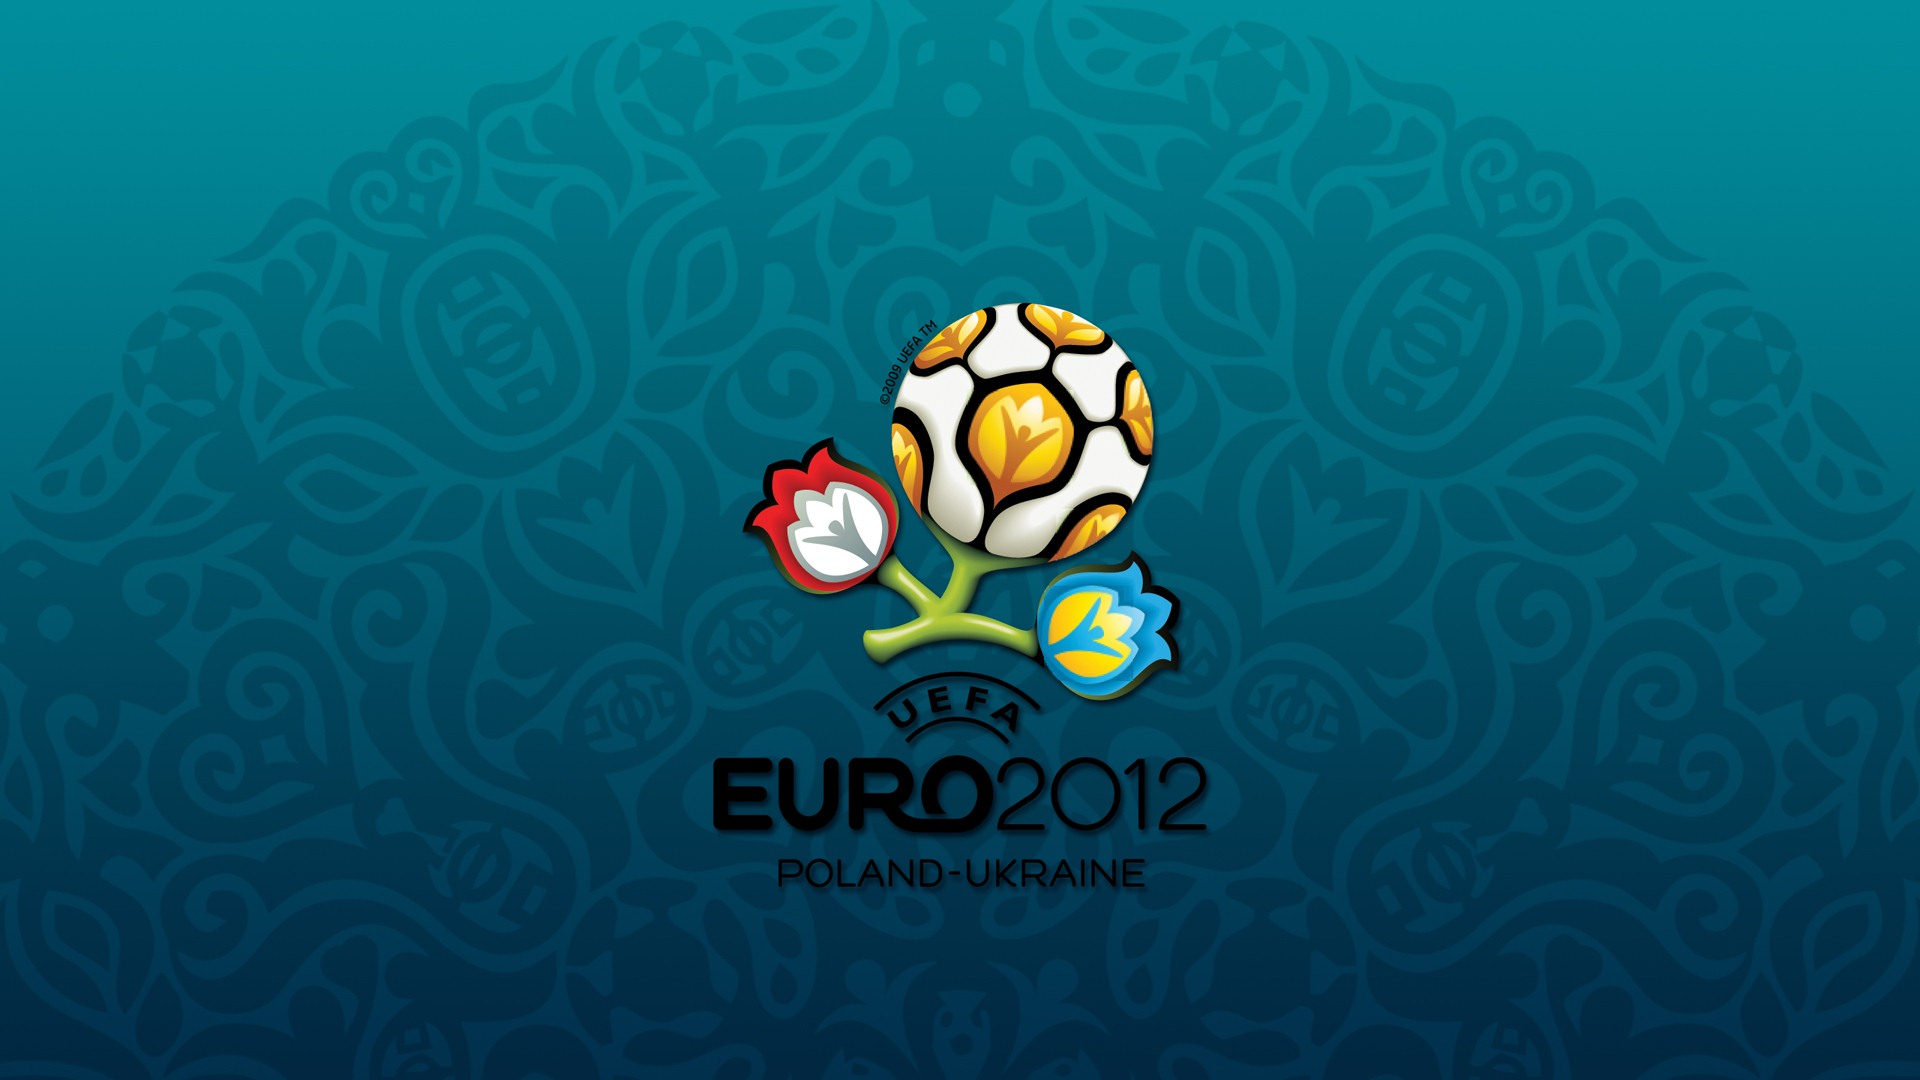 UEFA EURO 2012 欧洲足球锦标赛 高清壁纸(二)13 - 1920x1080